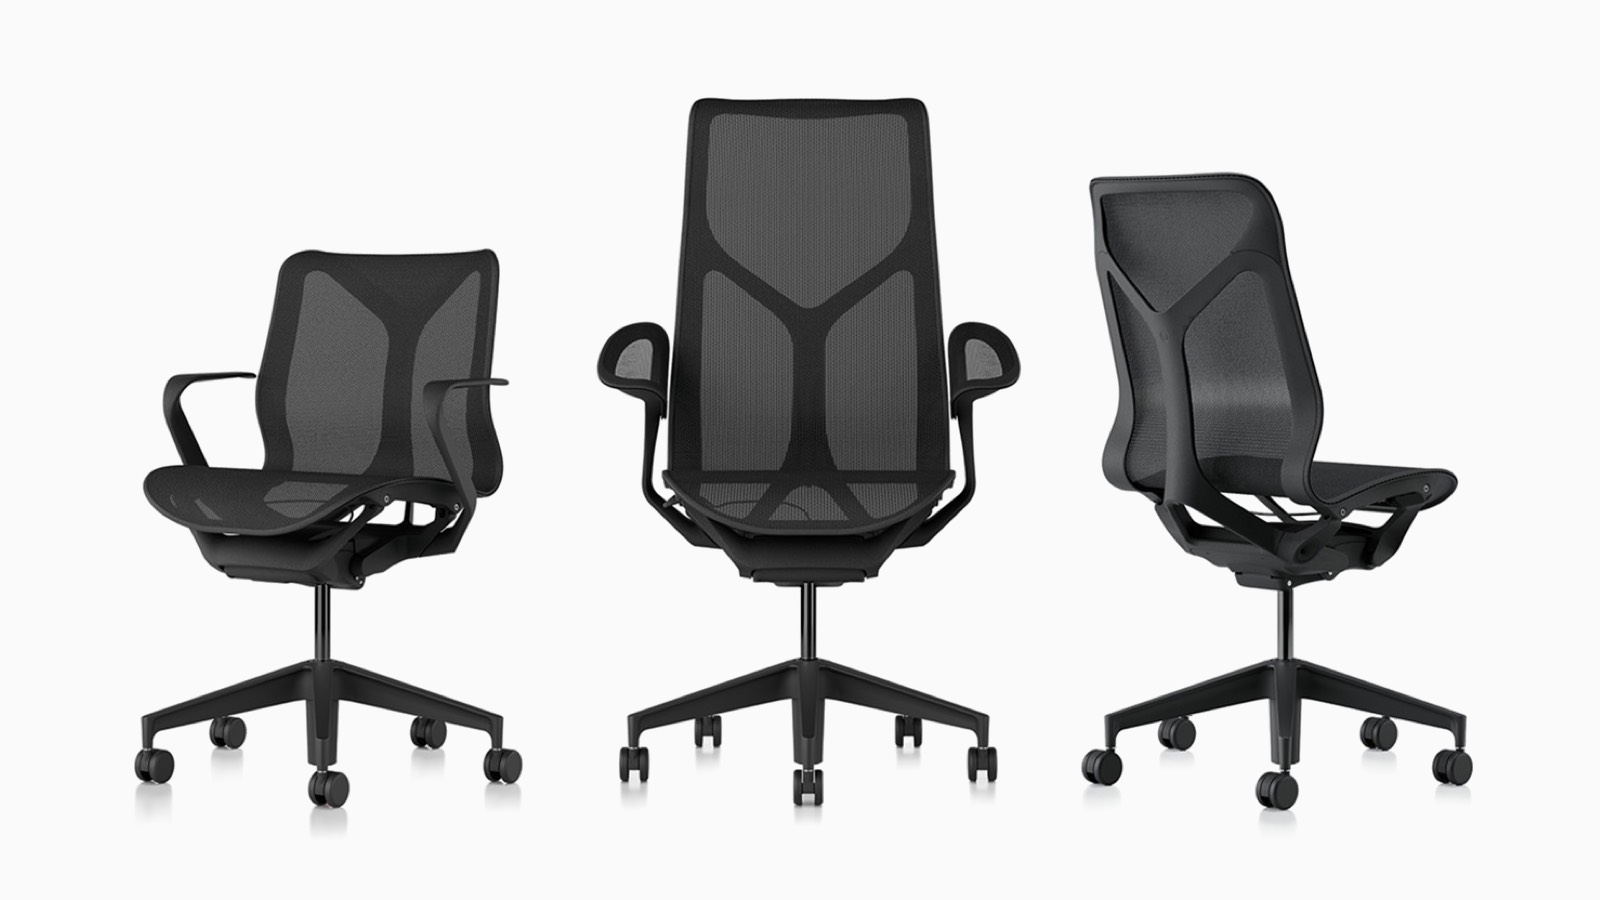 Cadeiras de mesa ergonômicas Low-back, high-back e mid-back Cosm com materiais de suspensão, bases e estruturas em cinza escuro Graphite.